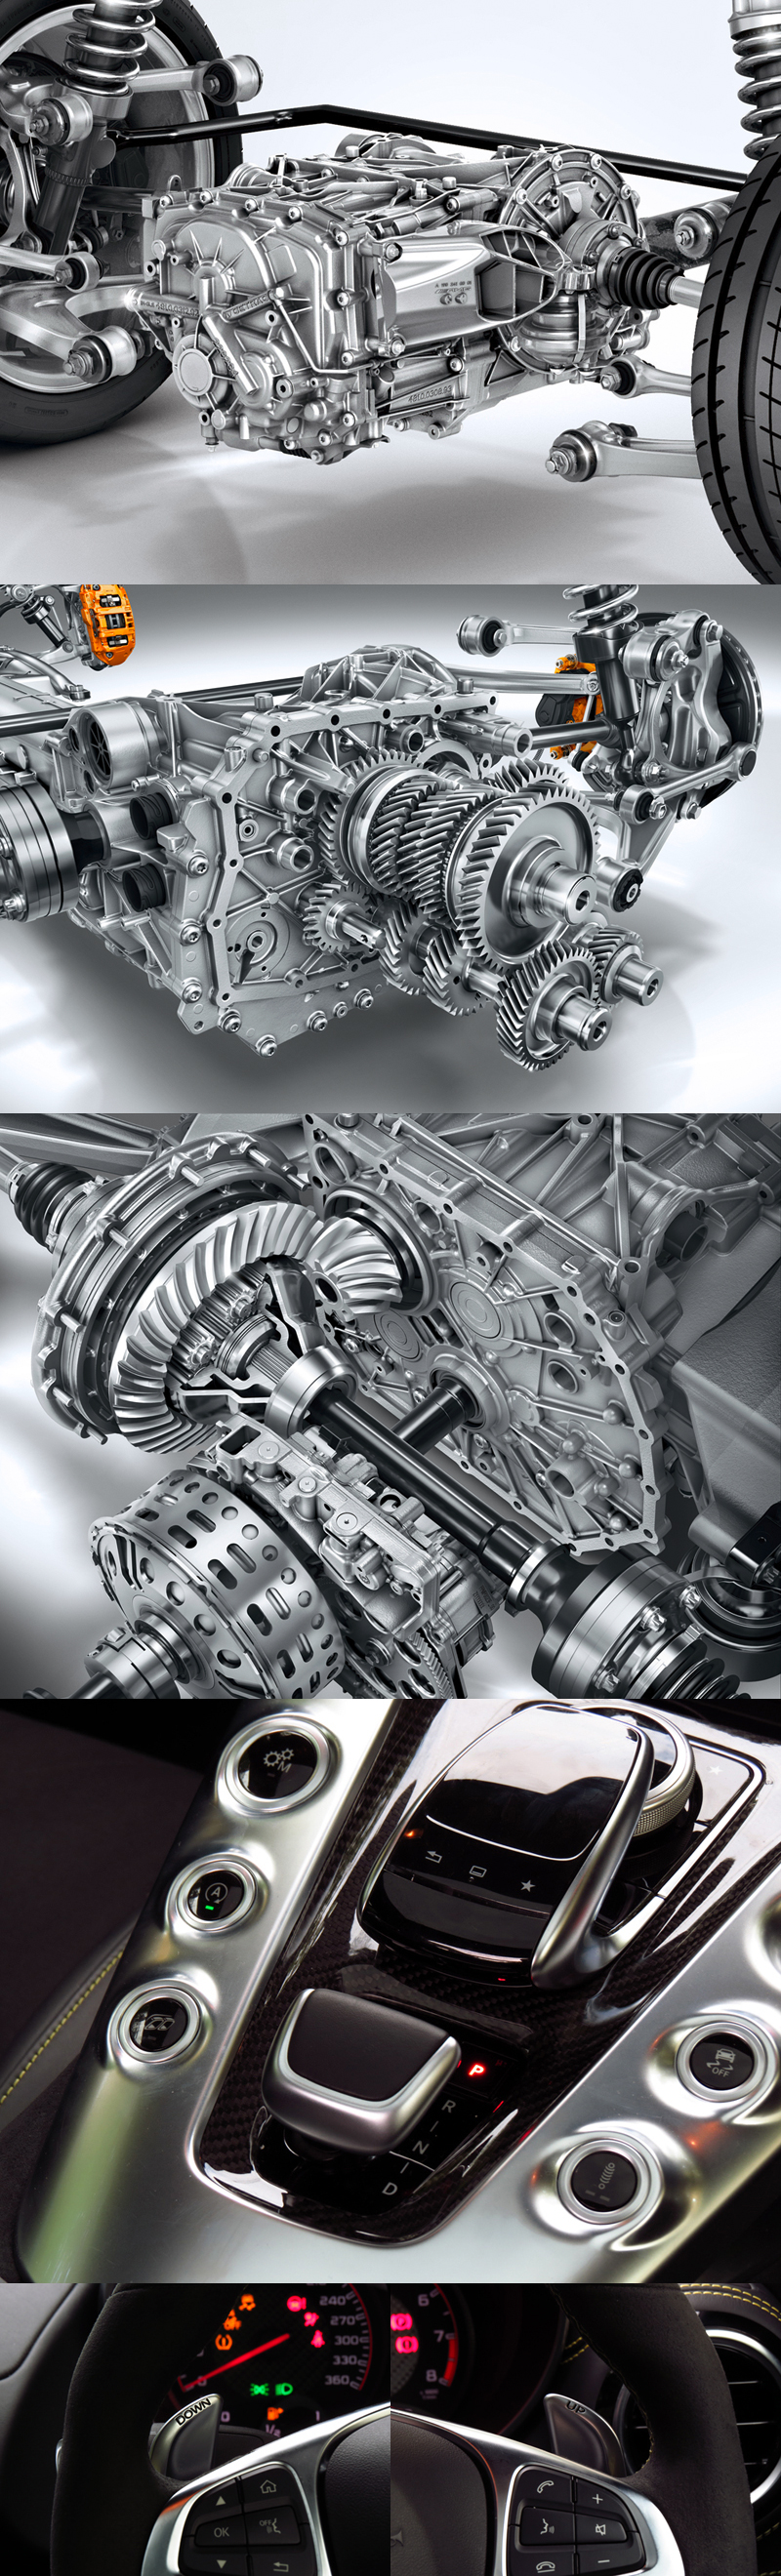 2015_08_Mercedes_Benz_AMG_GT_S_Engine_03_Transmission